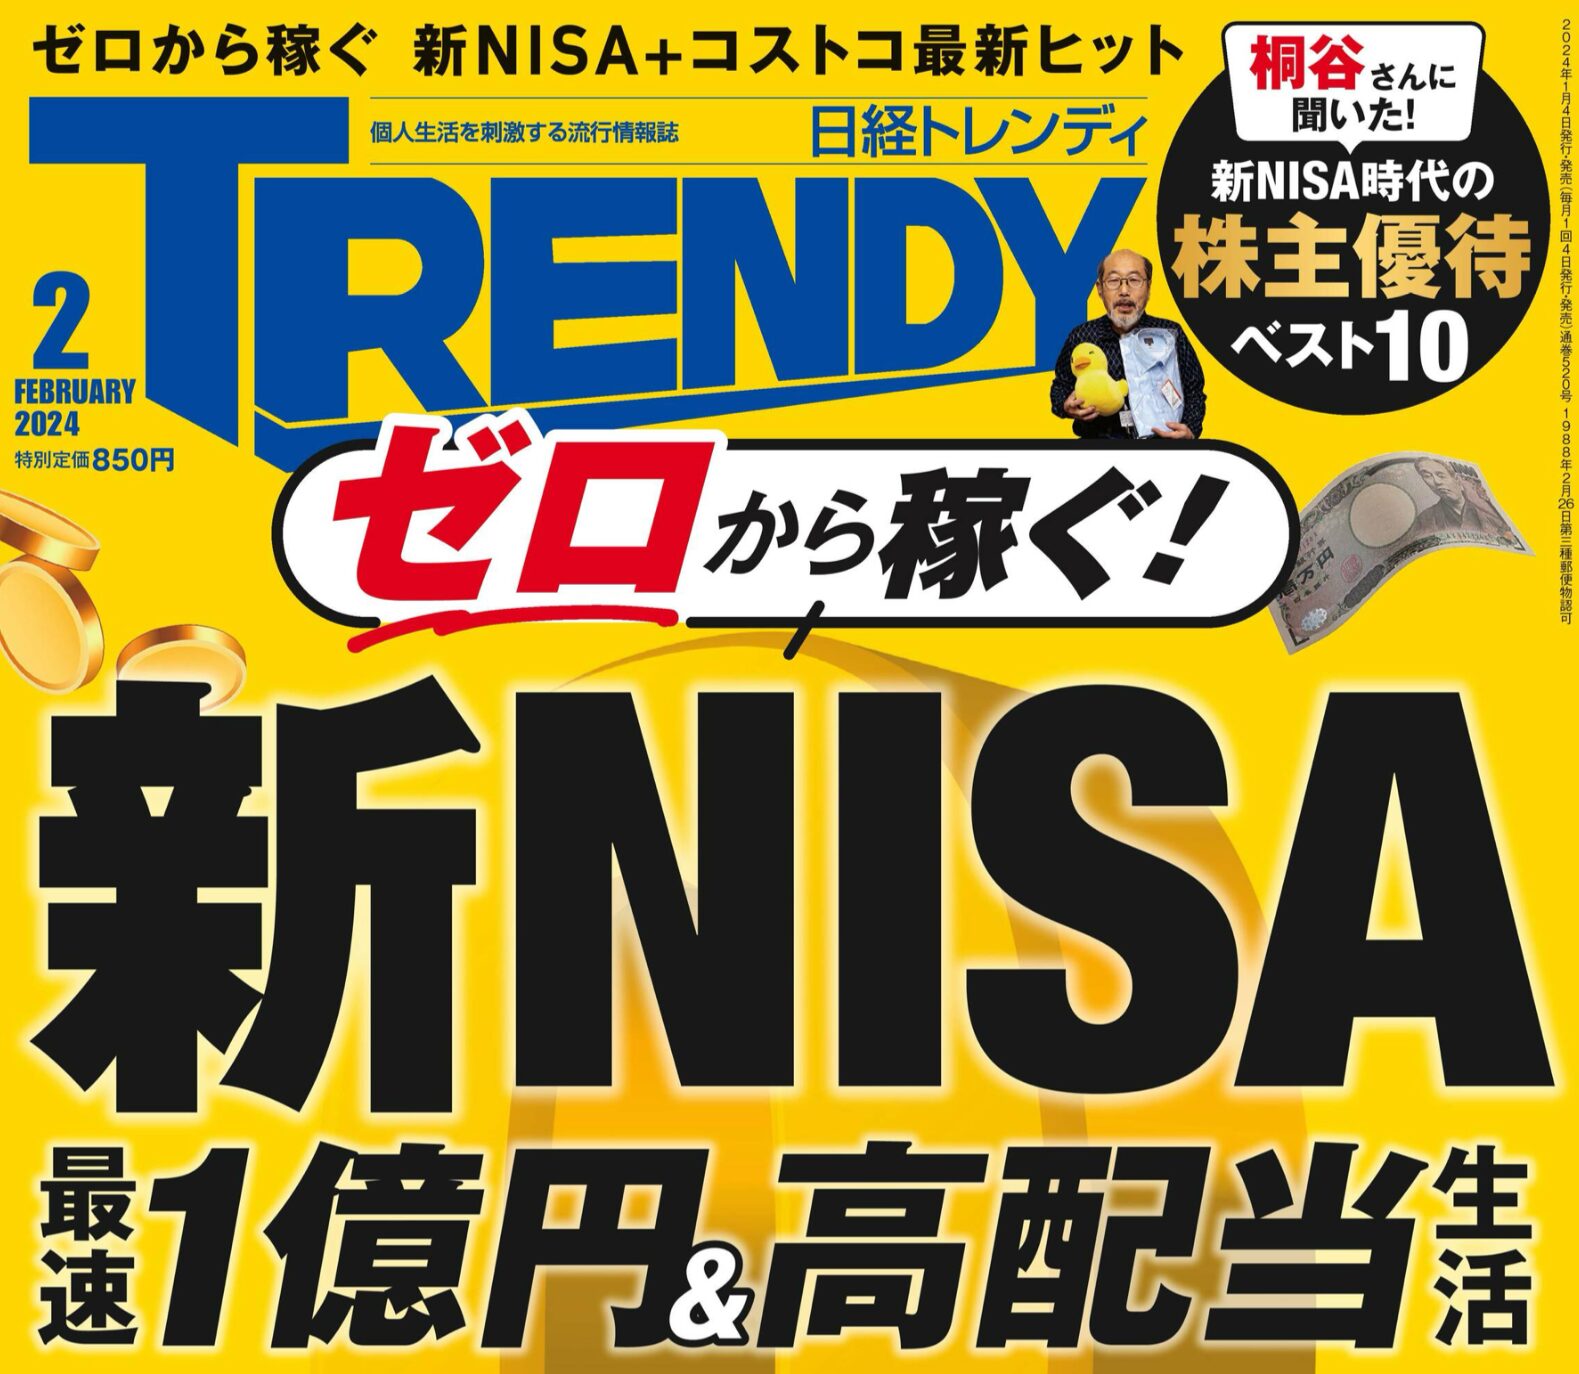 新NISAは”トレンディ”なのですね